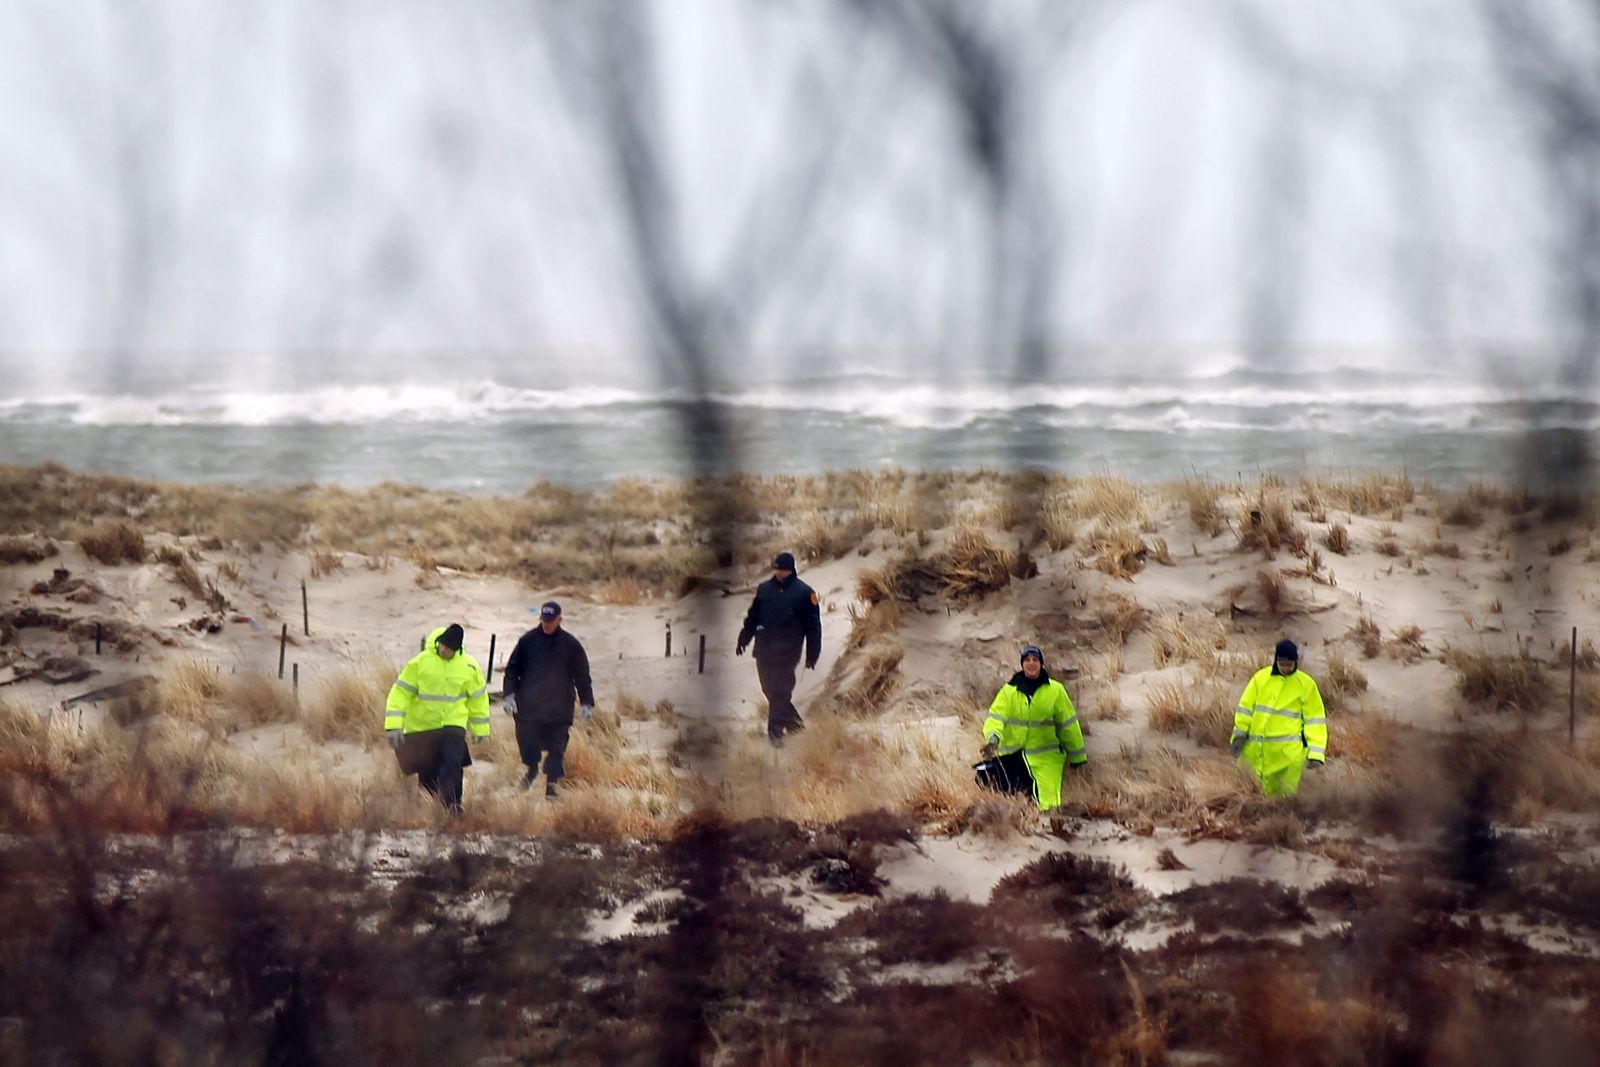 Podél pobřeží se našlo několik těl. S pravděpodobností ale nebyla všechna těla nalezena.